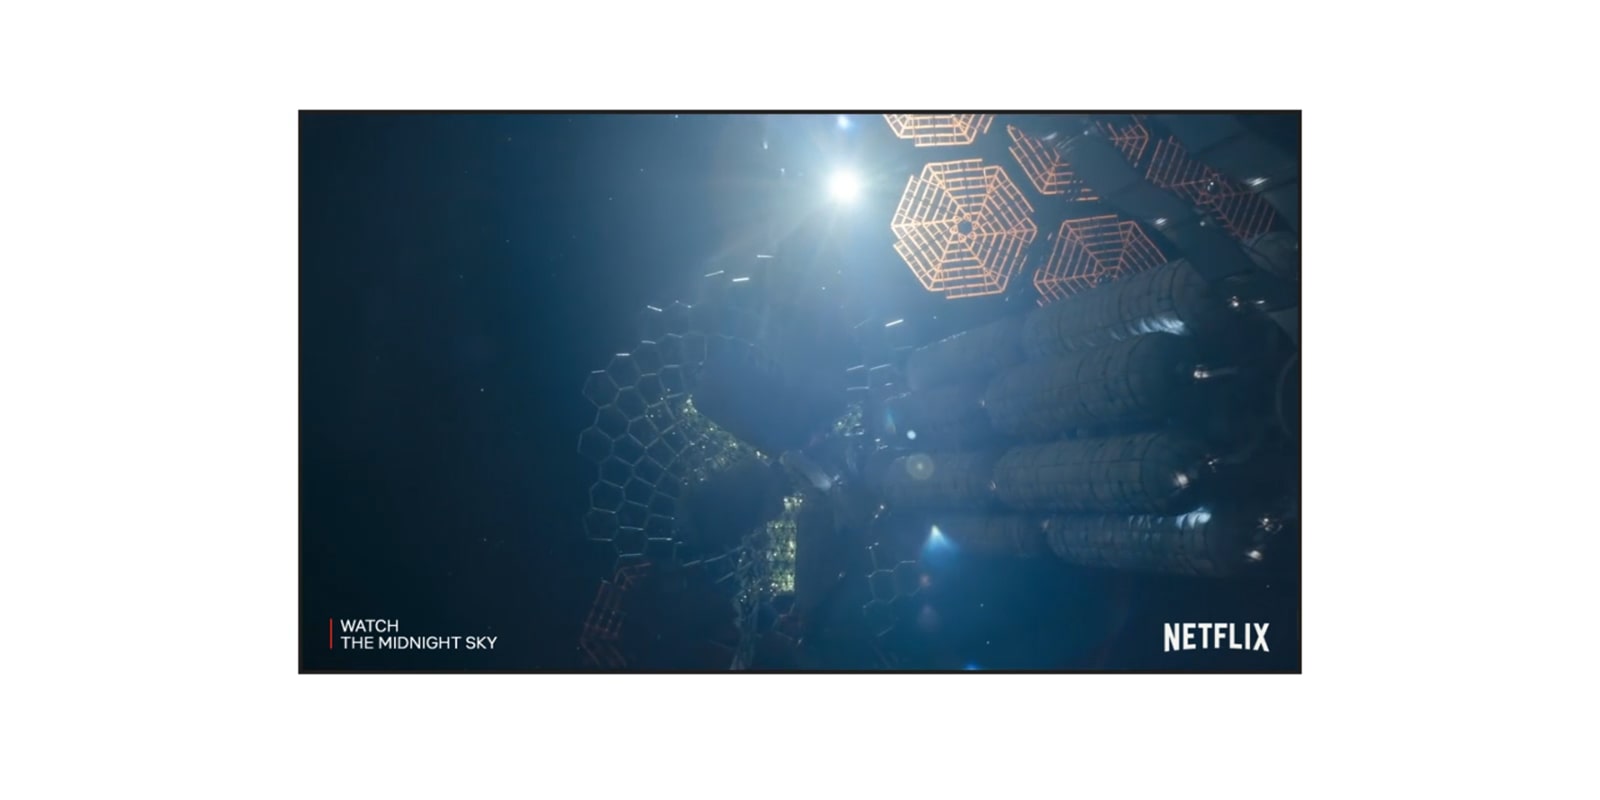 TV zaslon, ki prikazuje napoved filma Midnight Sky na Netflixu (predvajanje videoposnetka).